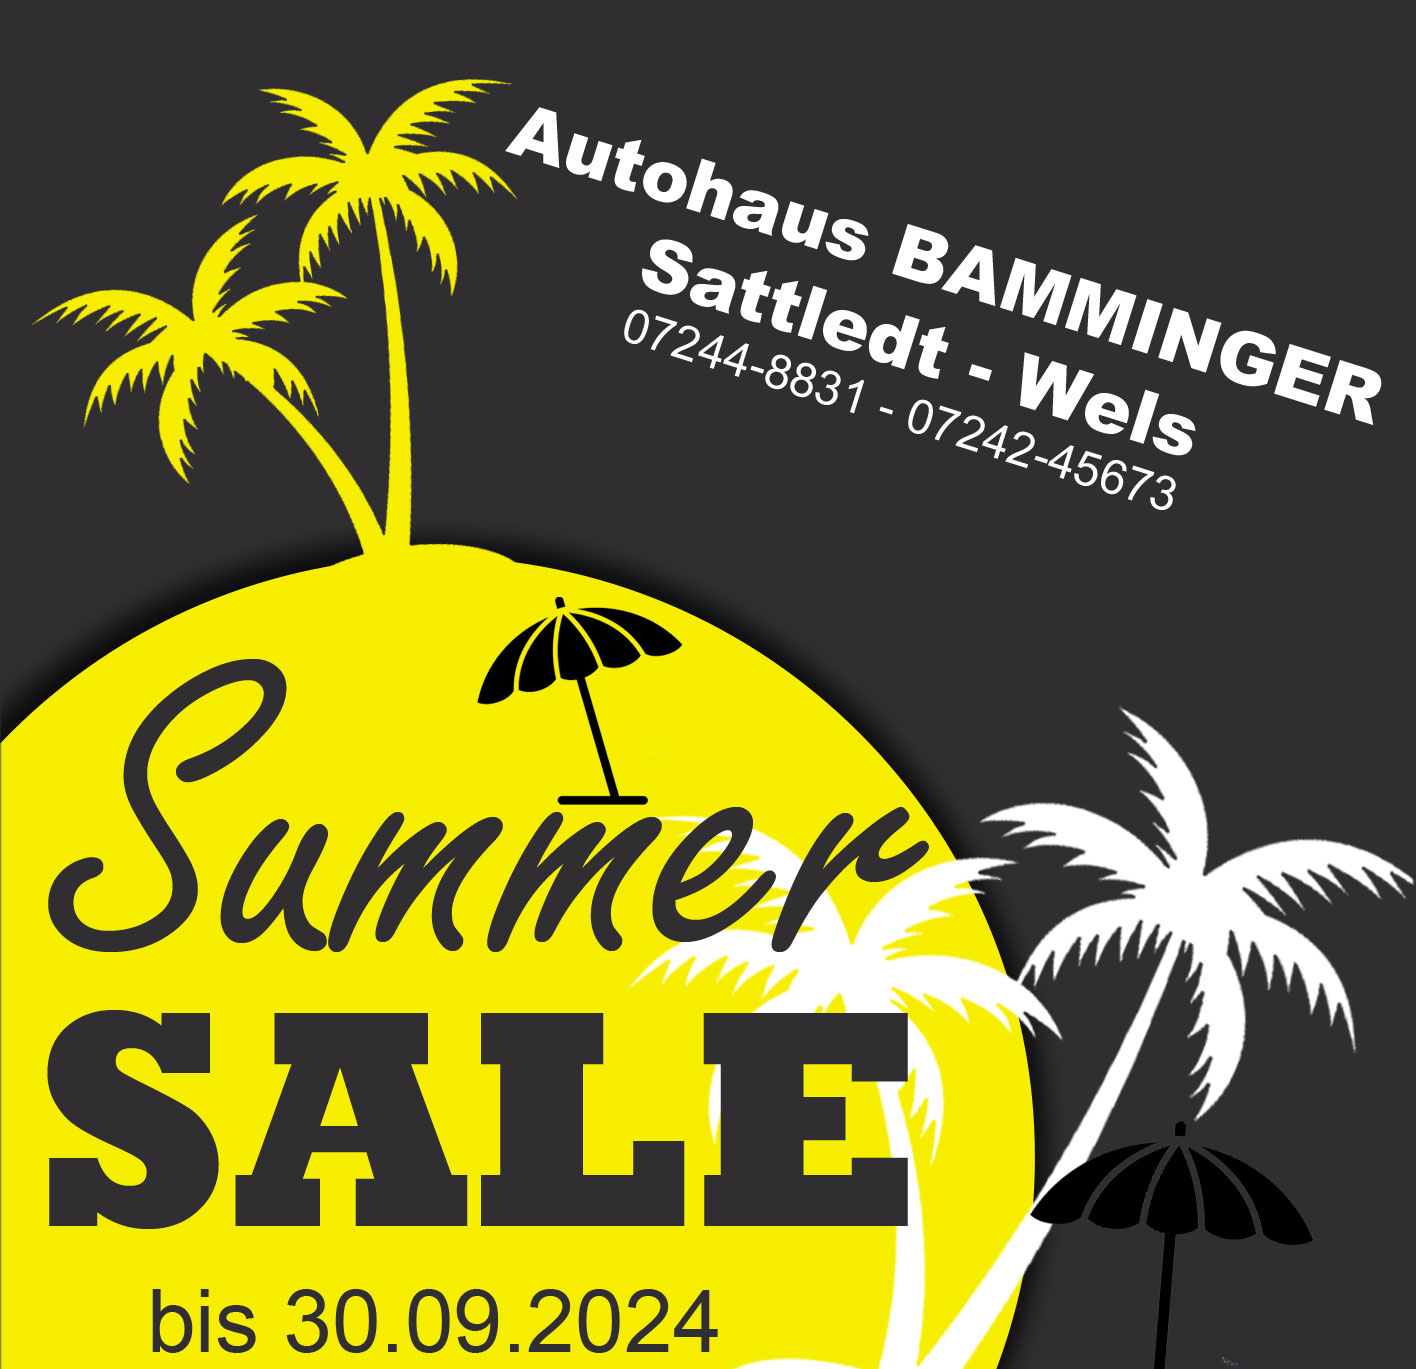 BAMMINGER Summer SALE